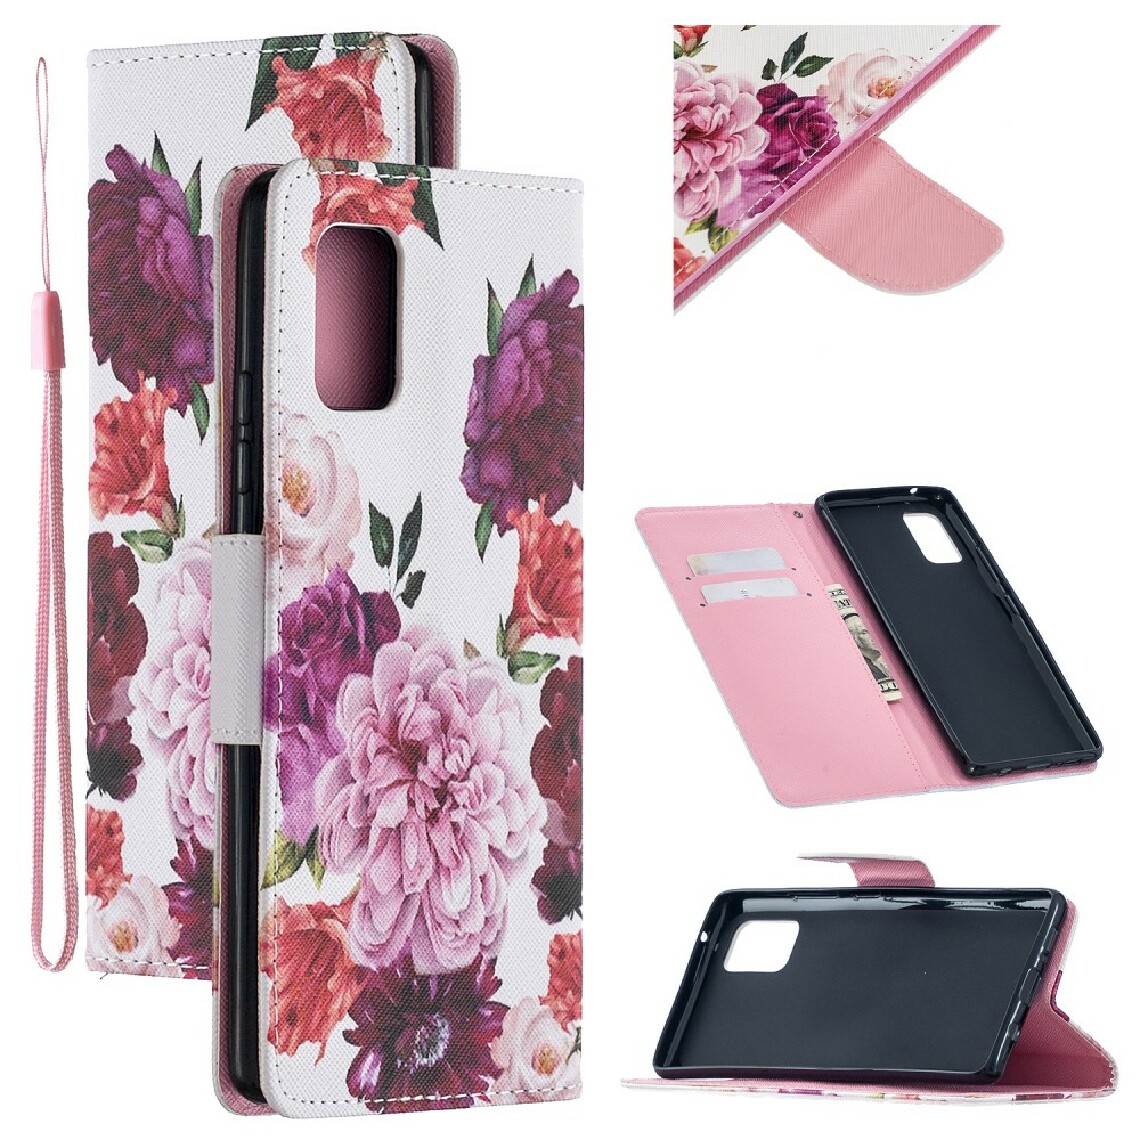 Other - Etui en PU impression de motifs fleur rose pour votre Samsung Galaxy A42 5G - Coque, étui smartphone